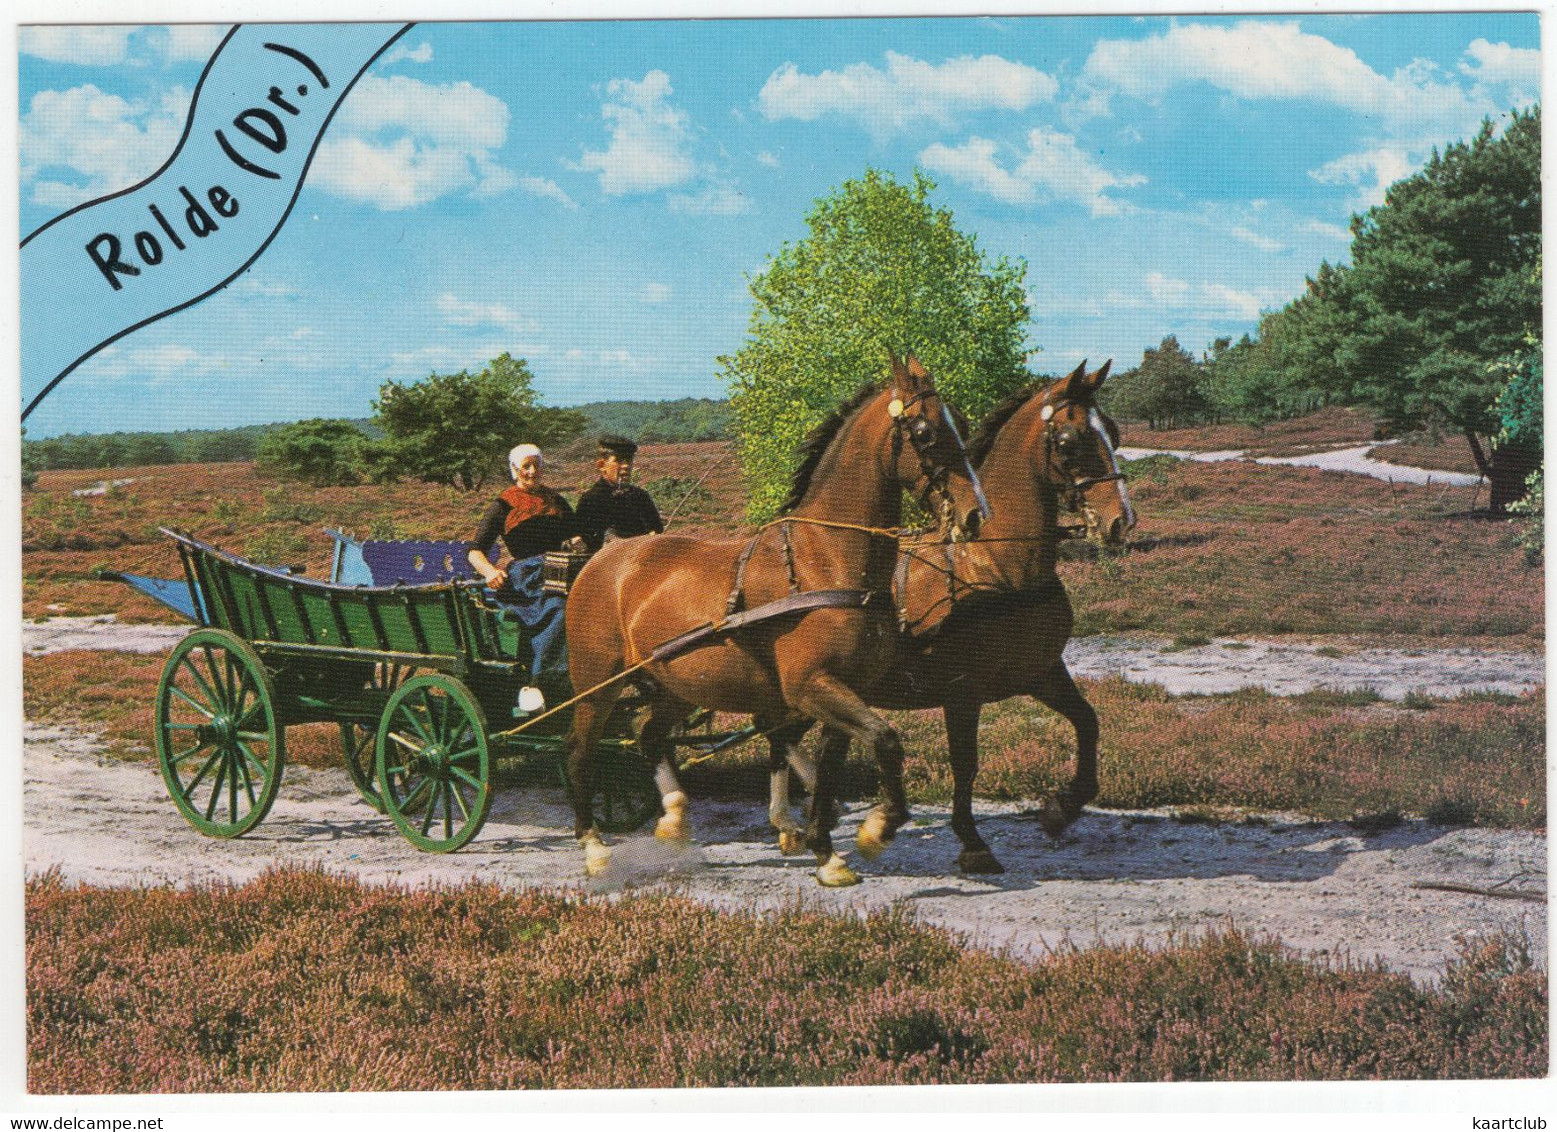 Rolde - (Drenthe, Nederland / Holland) - Nr. 662 - Paarden, Kar, Heide, Klederdrachten - ('Rolde' In Blauw Banner) - Rolde